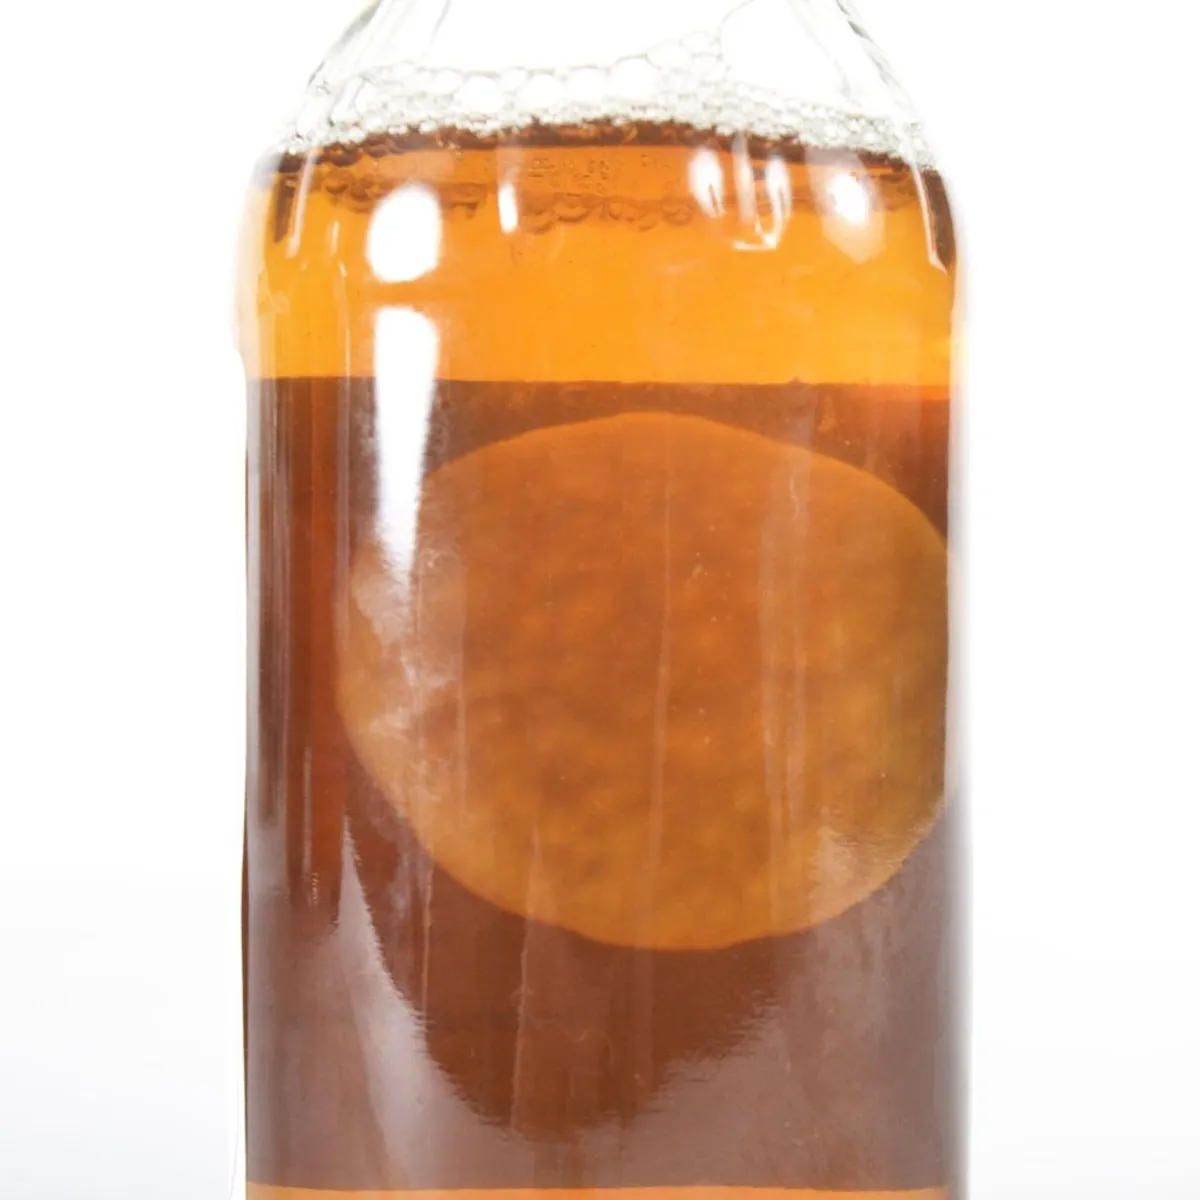 How to Make Apple Cider Vinegar Second Fermentation